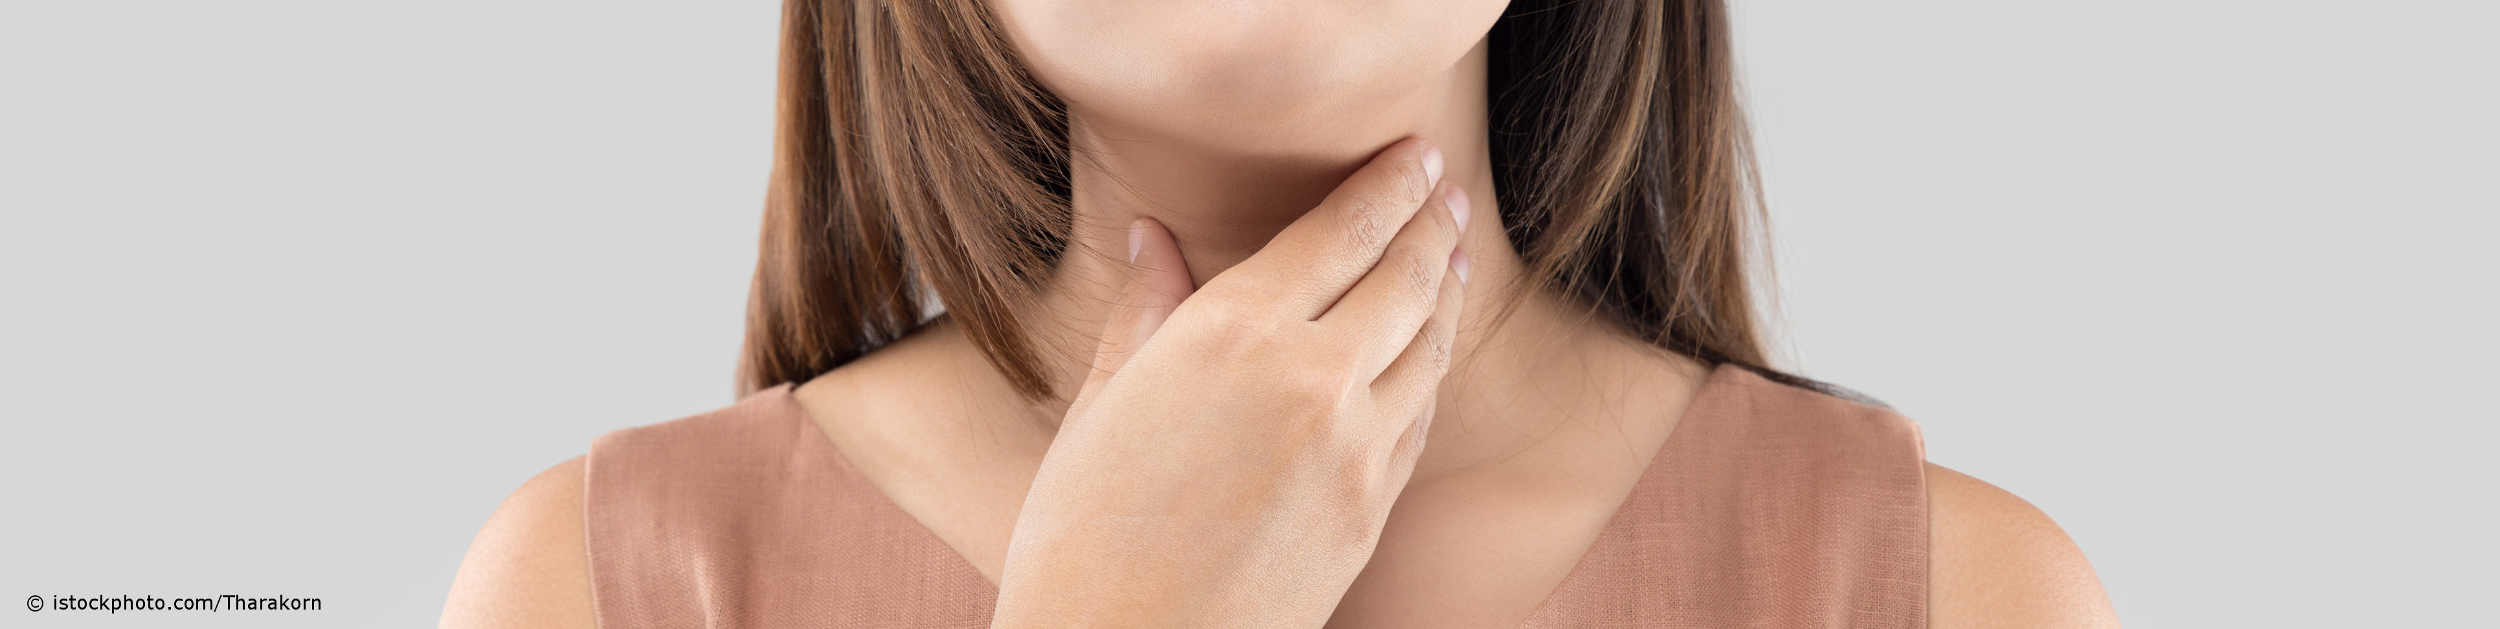 Frau mit Schilddrüsenunterfunktion tastet ihre Halsregion zwischen Adamsapfel und Schüsselbein ab.